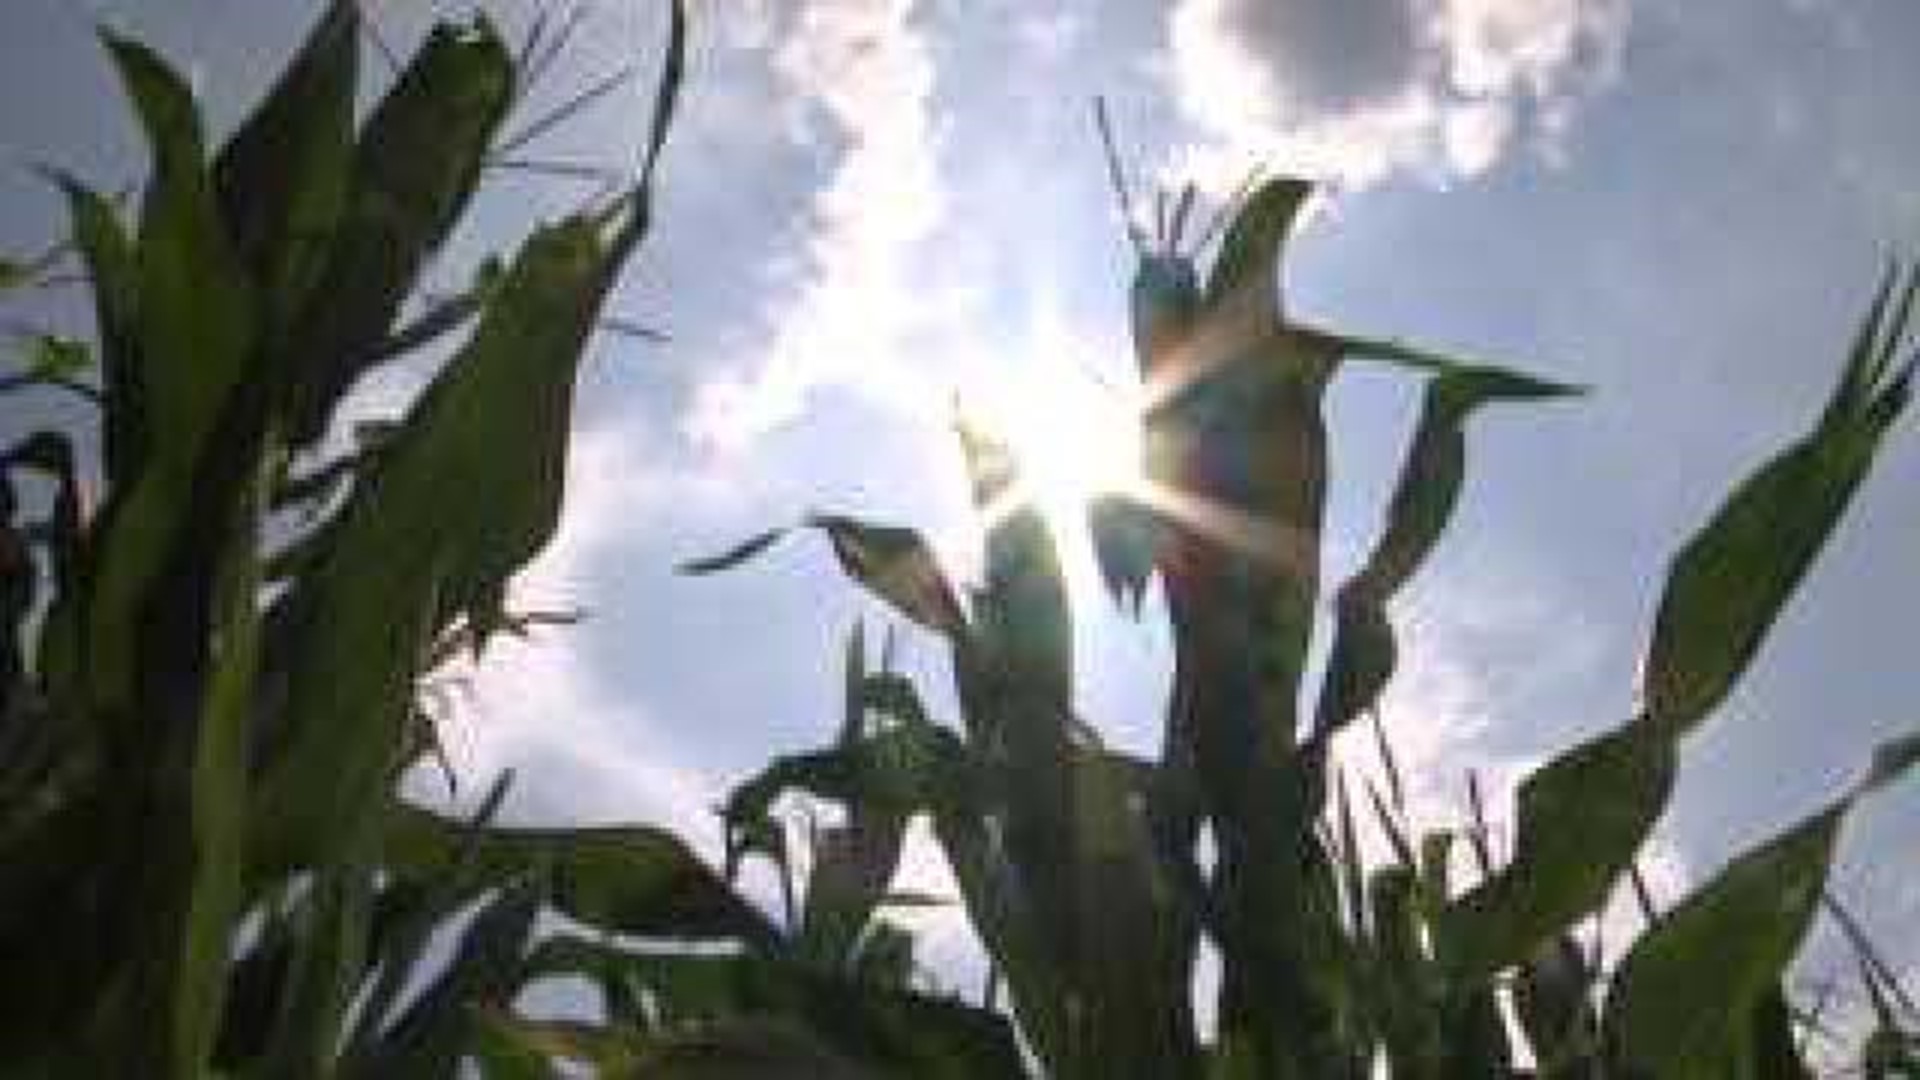 Drought conditions challenge Warren County corn crop